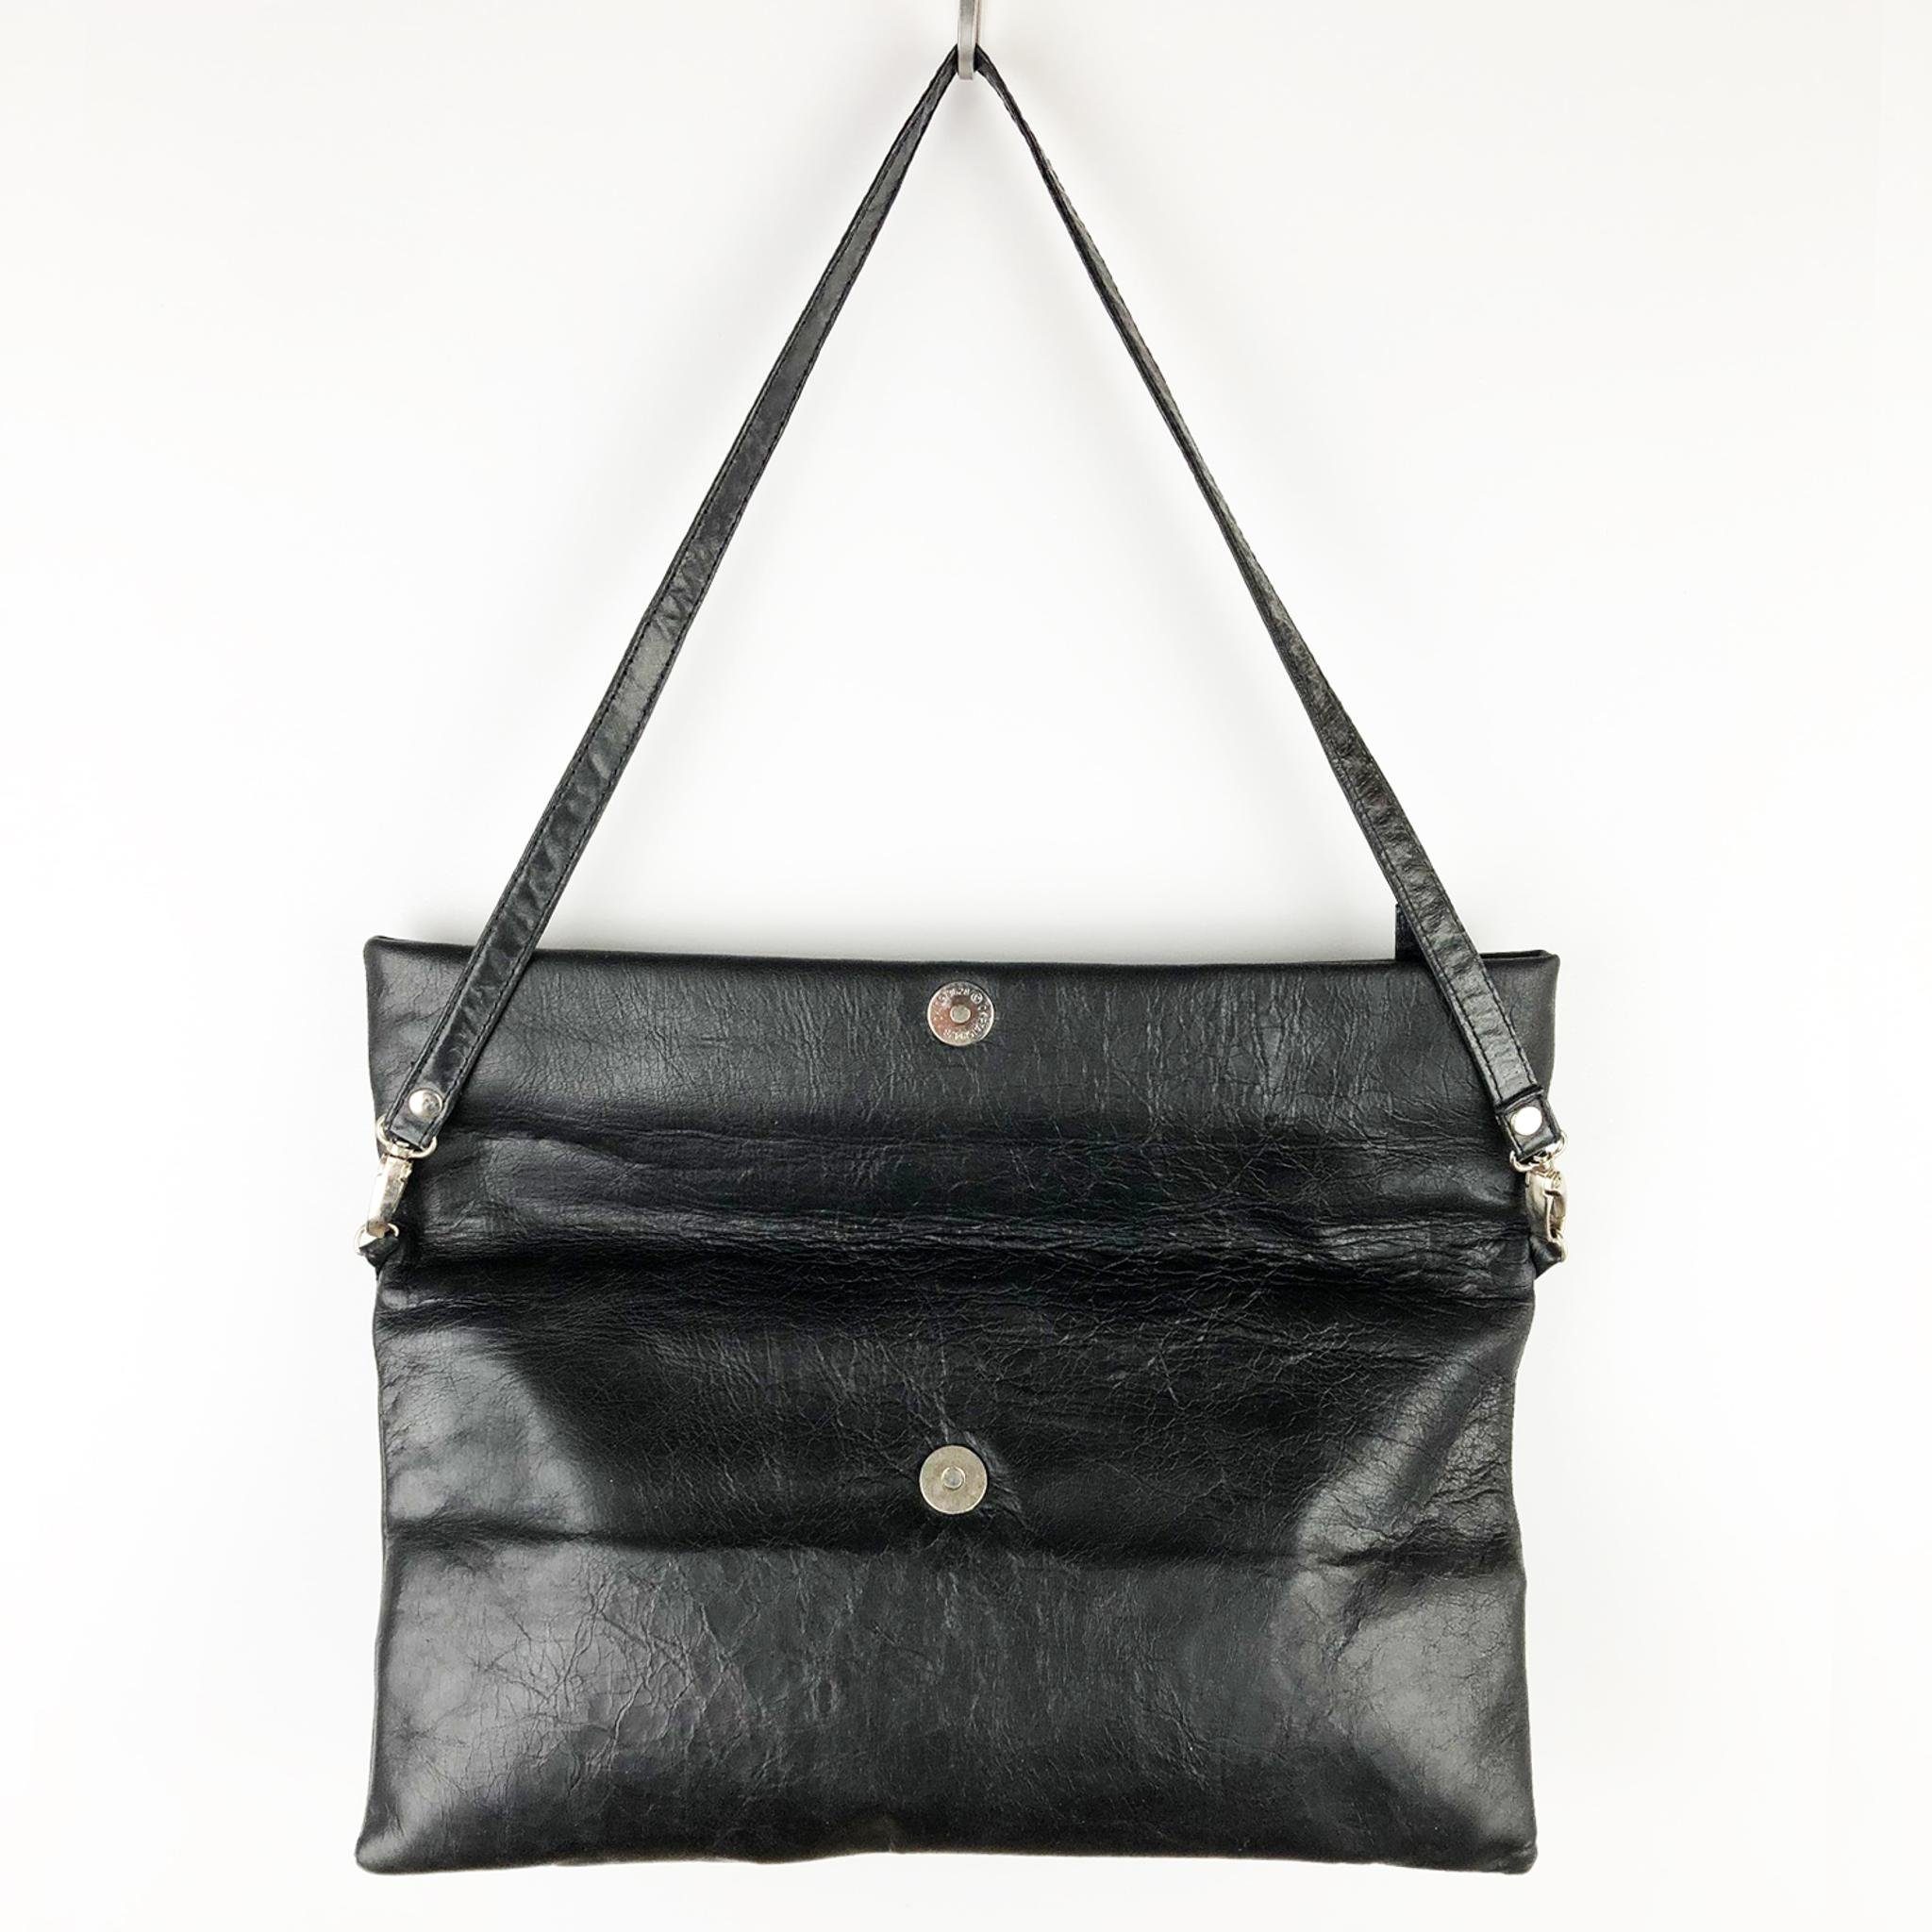 schwarz, goldmarie Leder DOU Handtasche Tasche Clutch Vintage DREIECK Muster